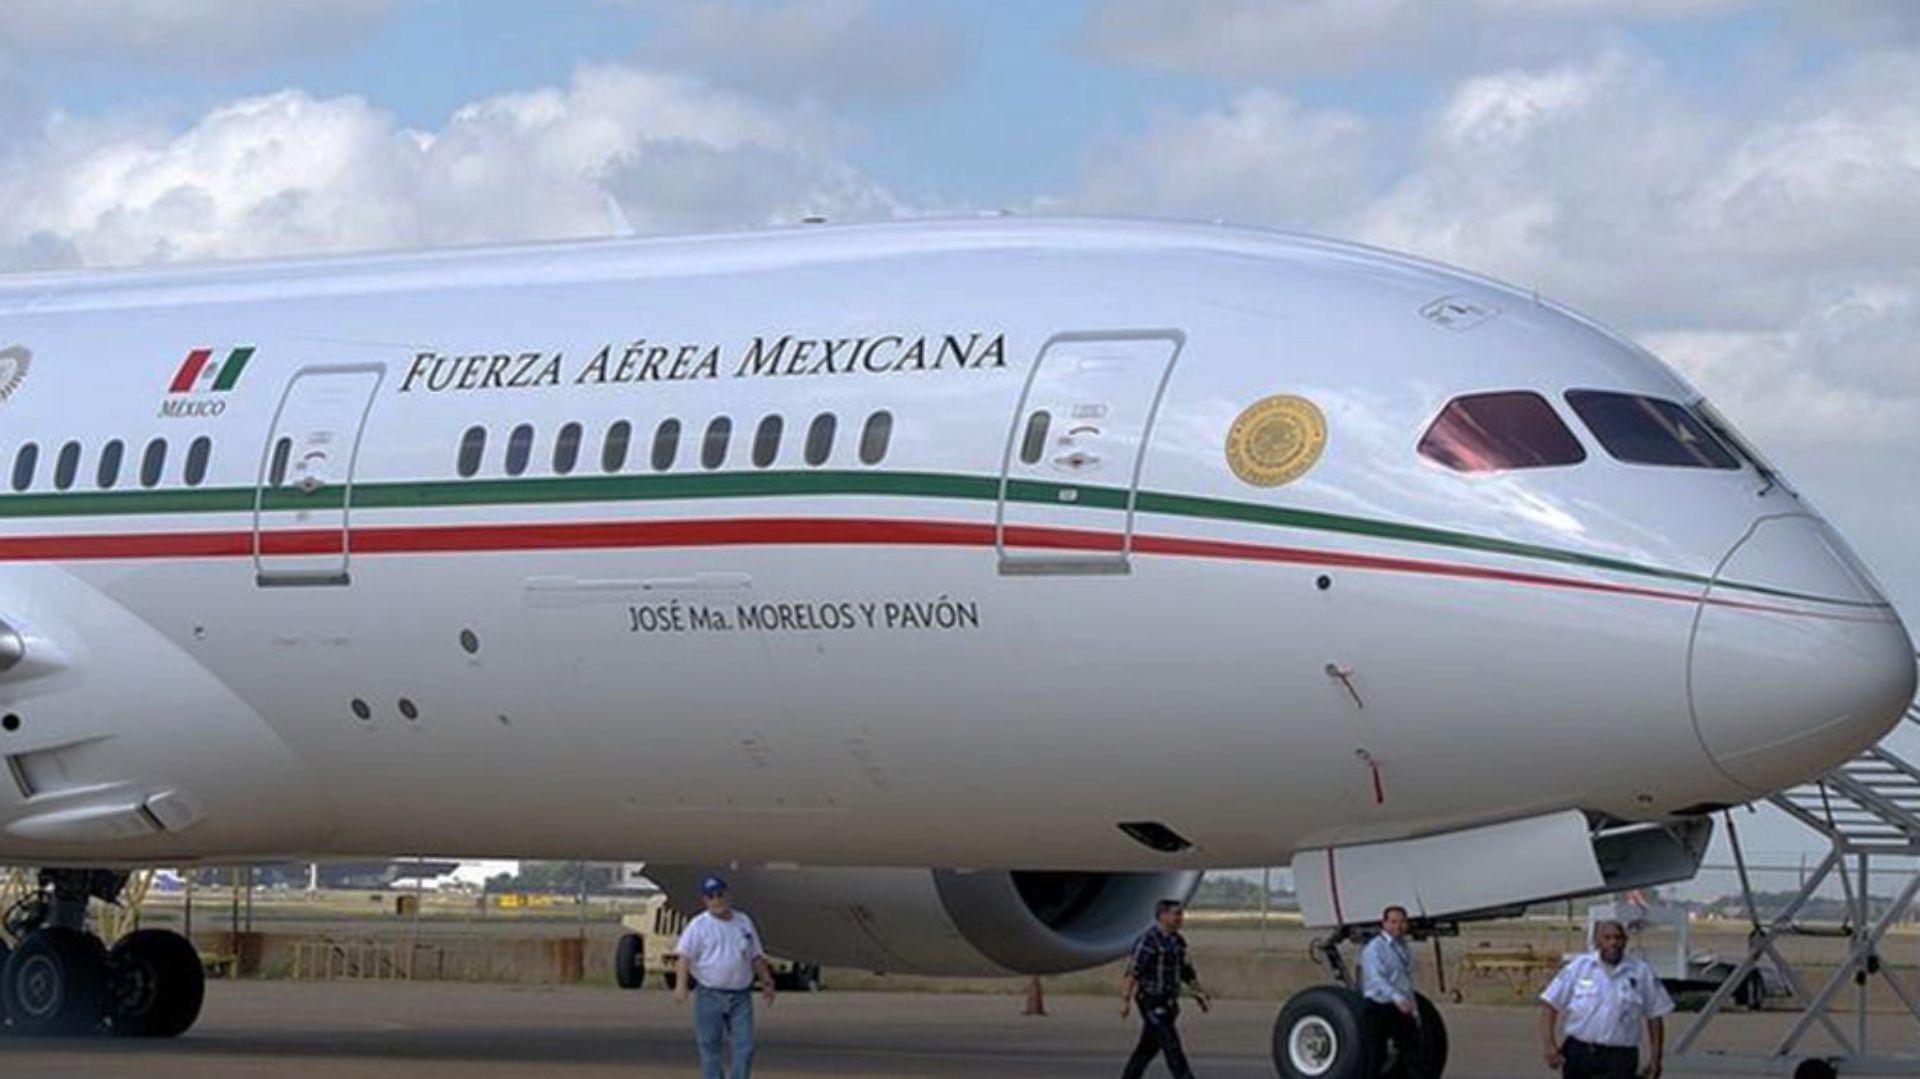 El avión presidencial se estima tienen un valor de USD 130 millones (Foto: Archivo)